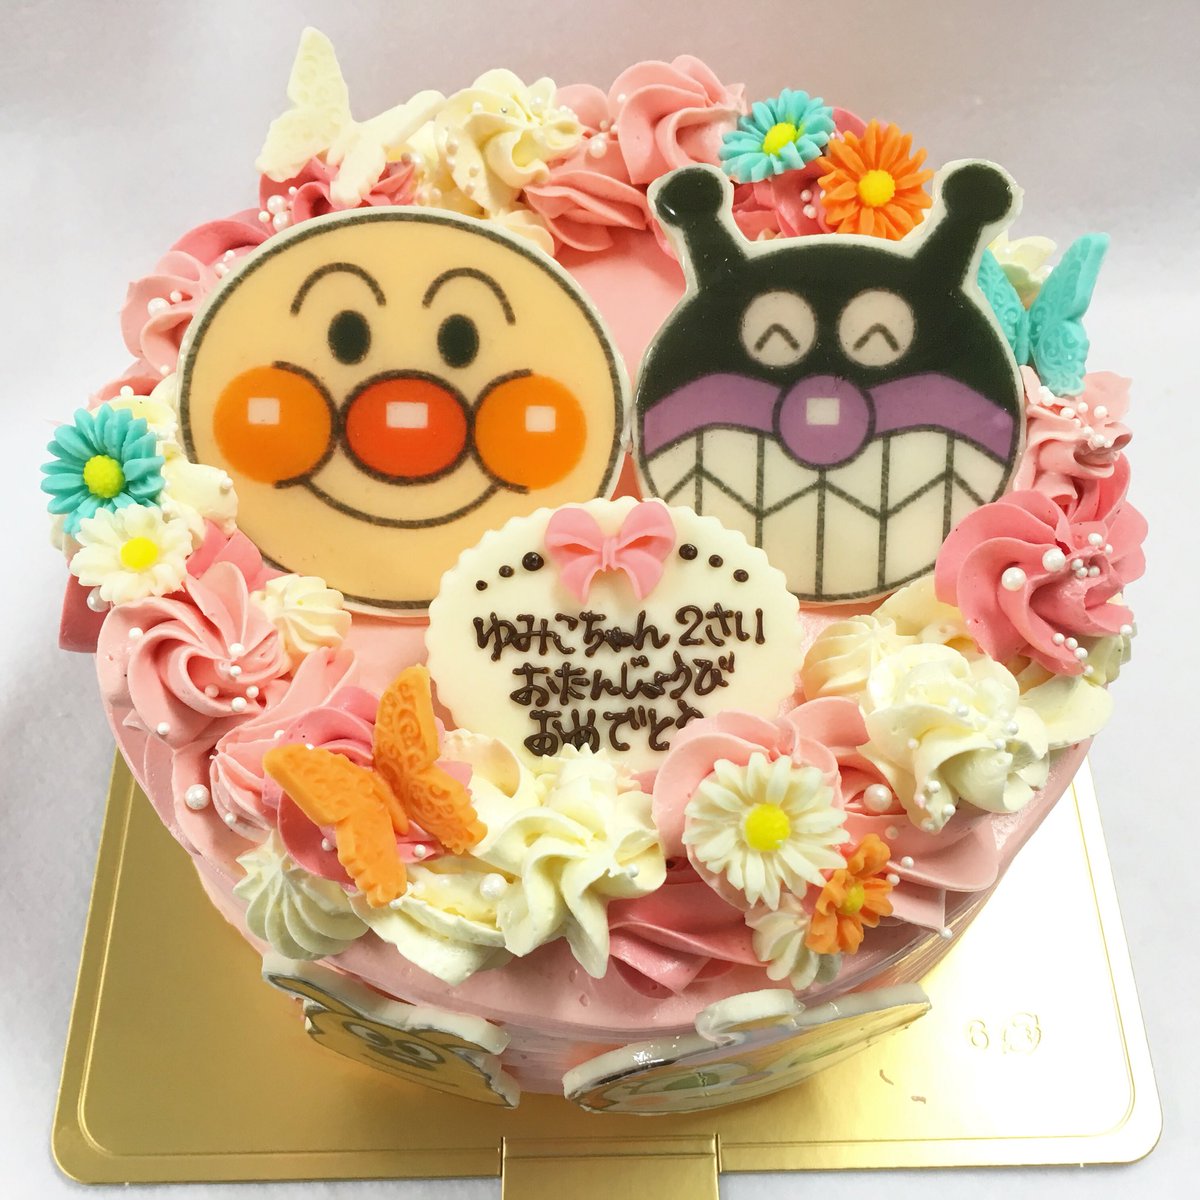 アトリエナユタ 女の子のケーキはかわいい アトリエナユタ オーダーメイドケーキ アンパンマンケーキ 大阪